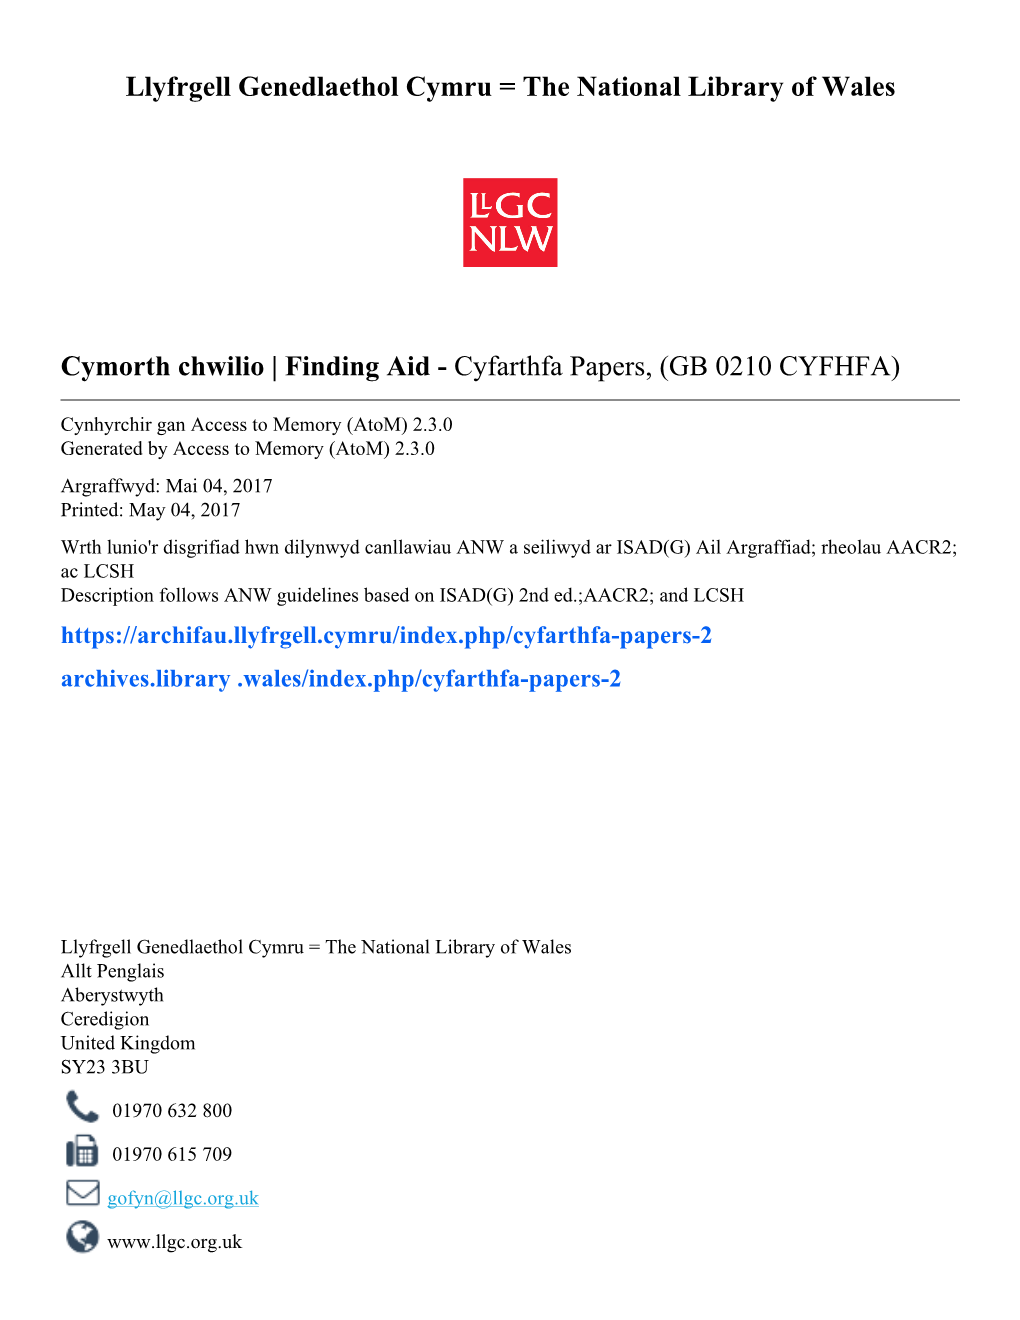 Cyfarthfa Papers, (GB 0210 CYFHFA)